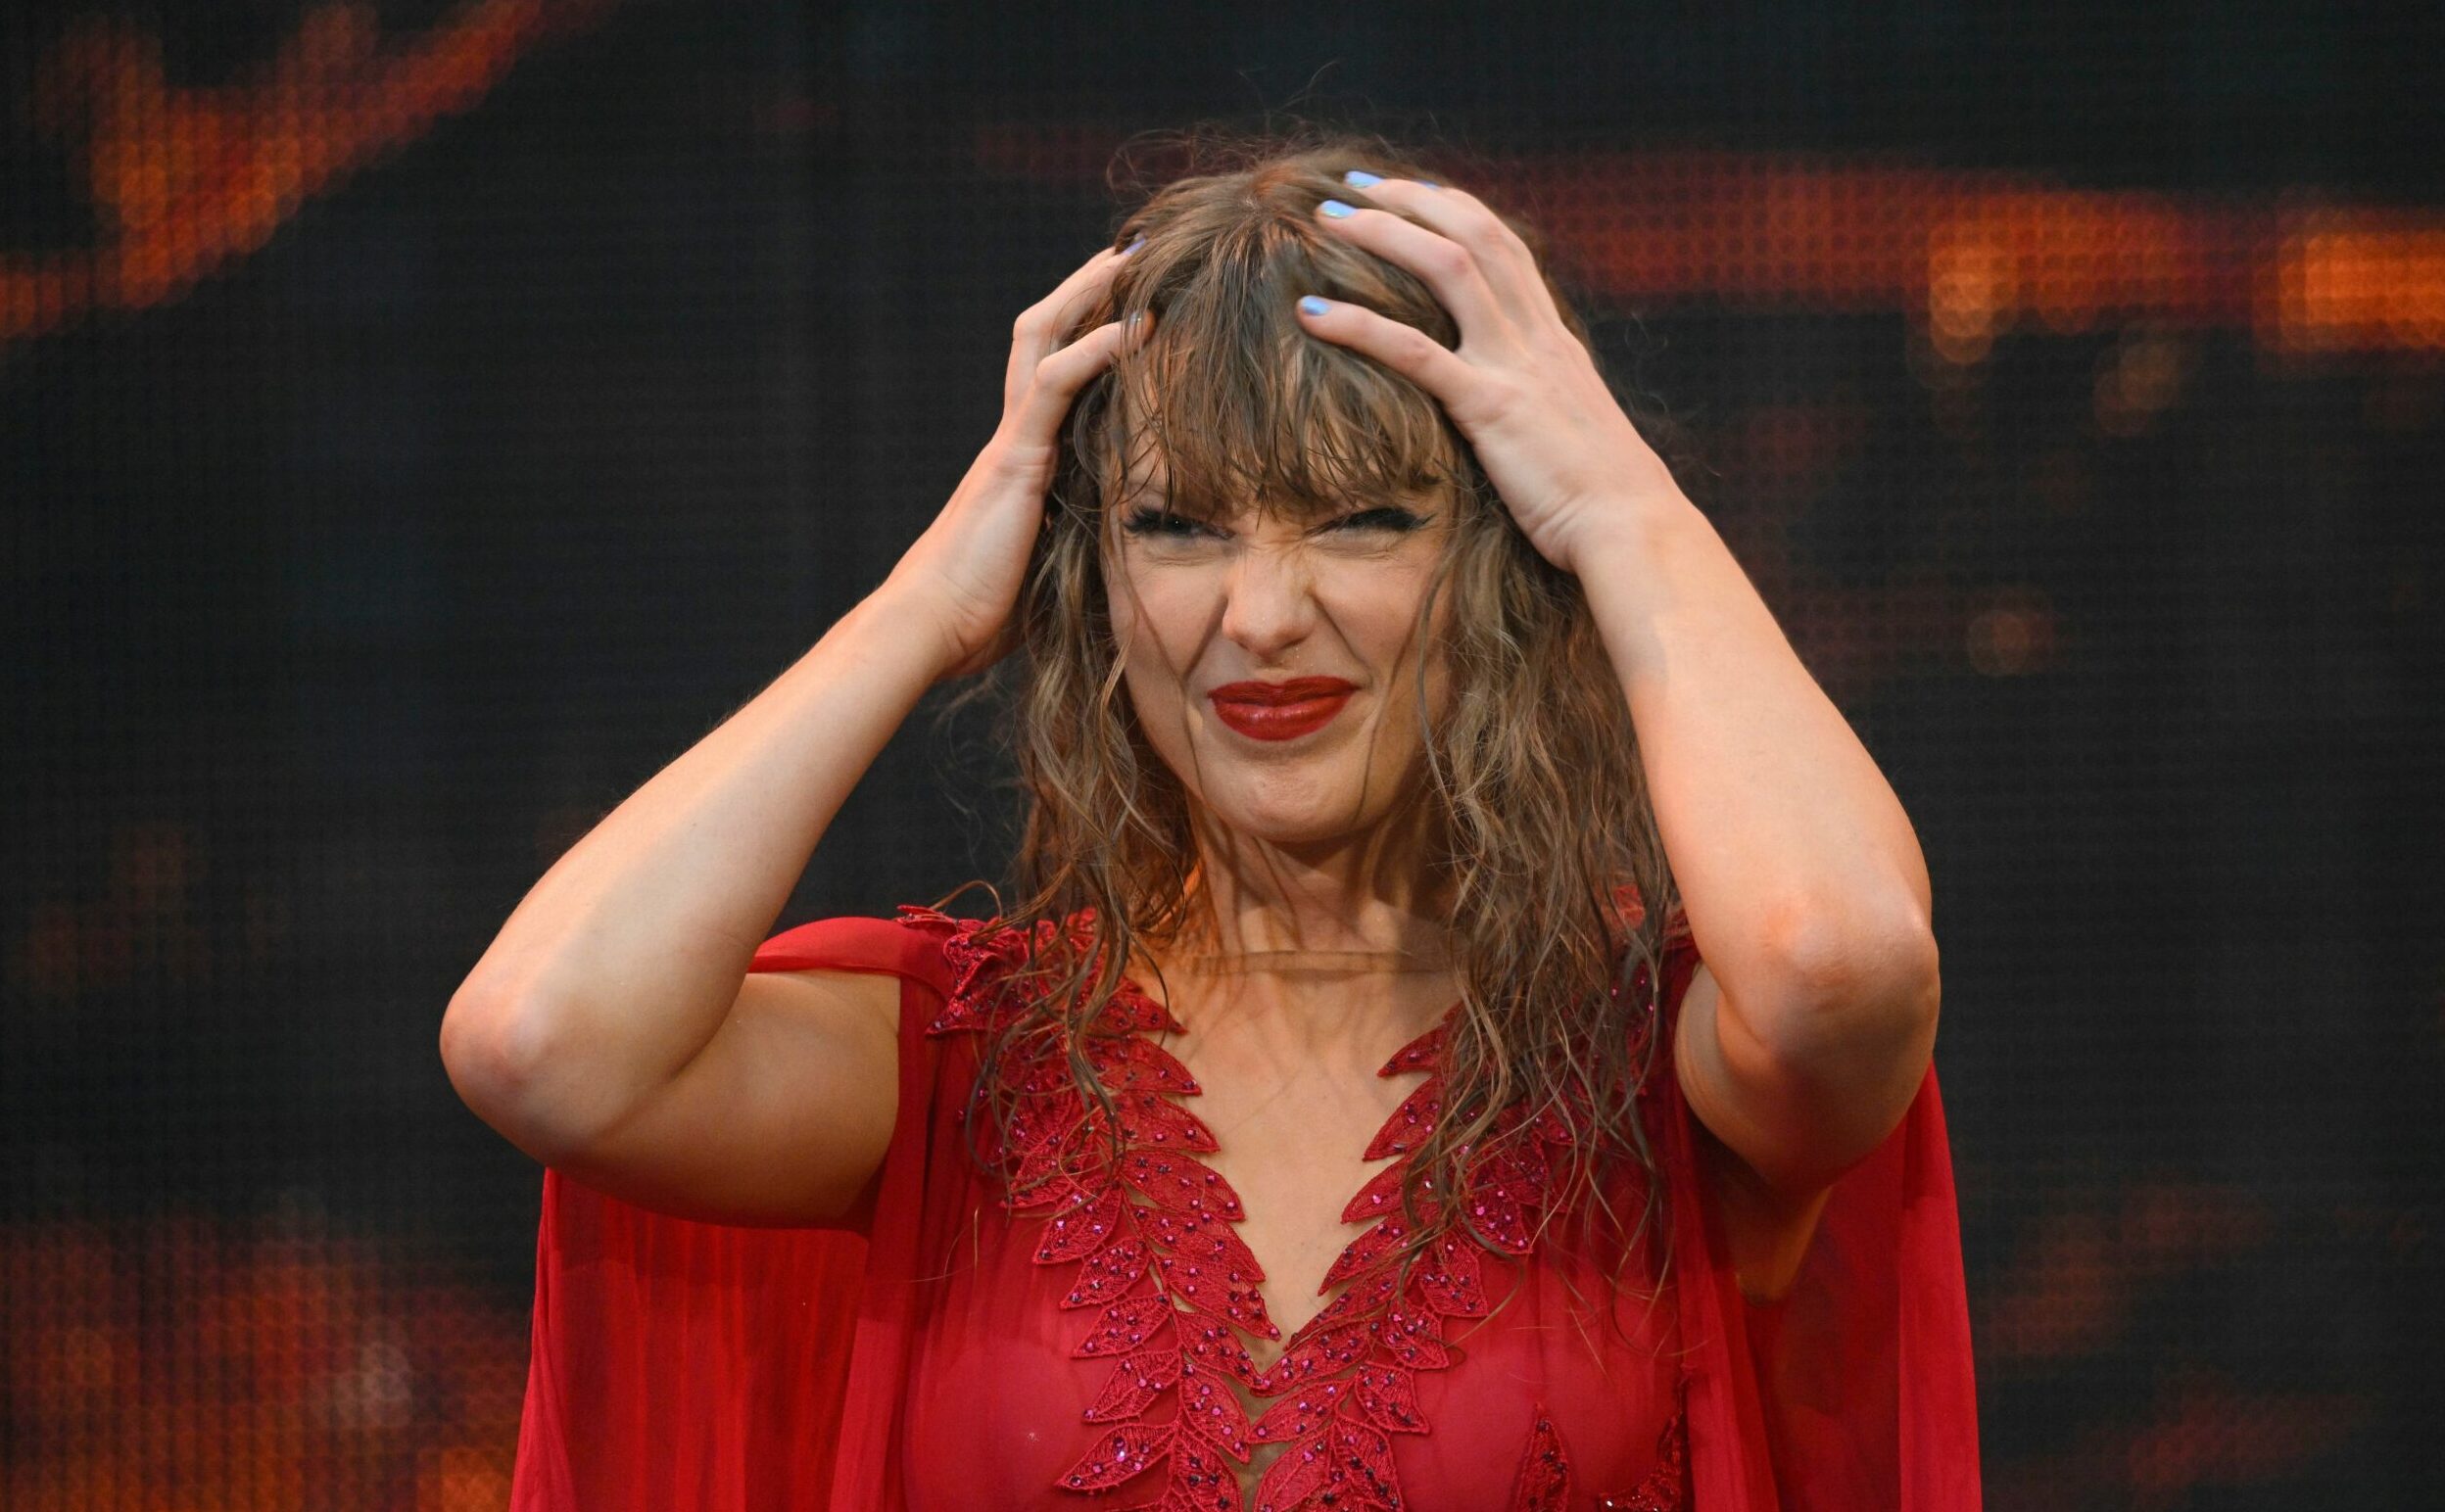 Taylor-Swift-bedankt-sich-bei-Hamburg-f-r-einzigartige-neue-Frisur